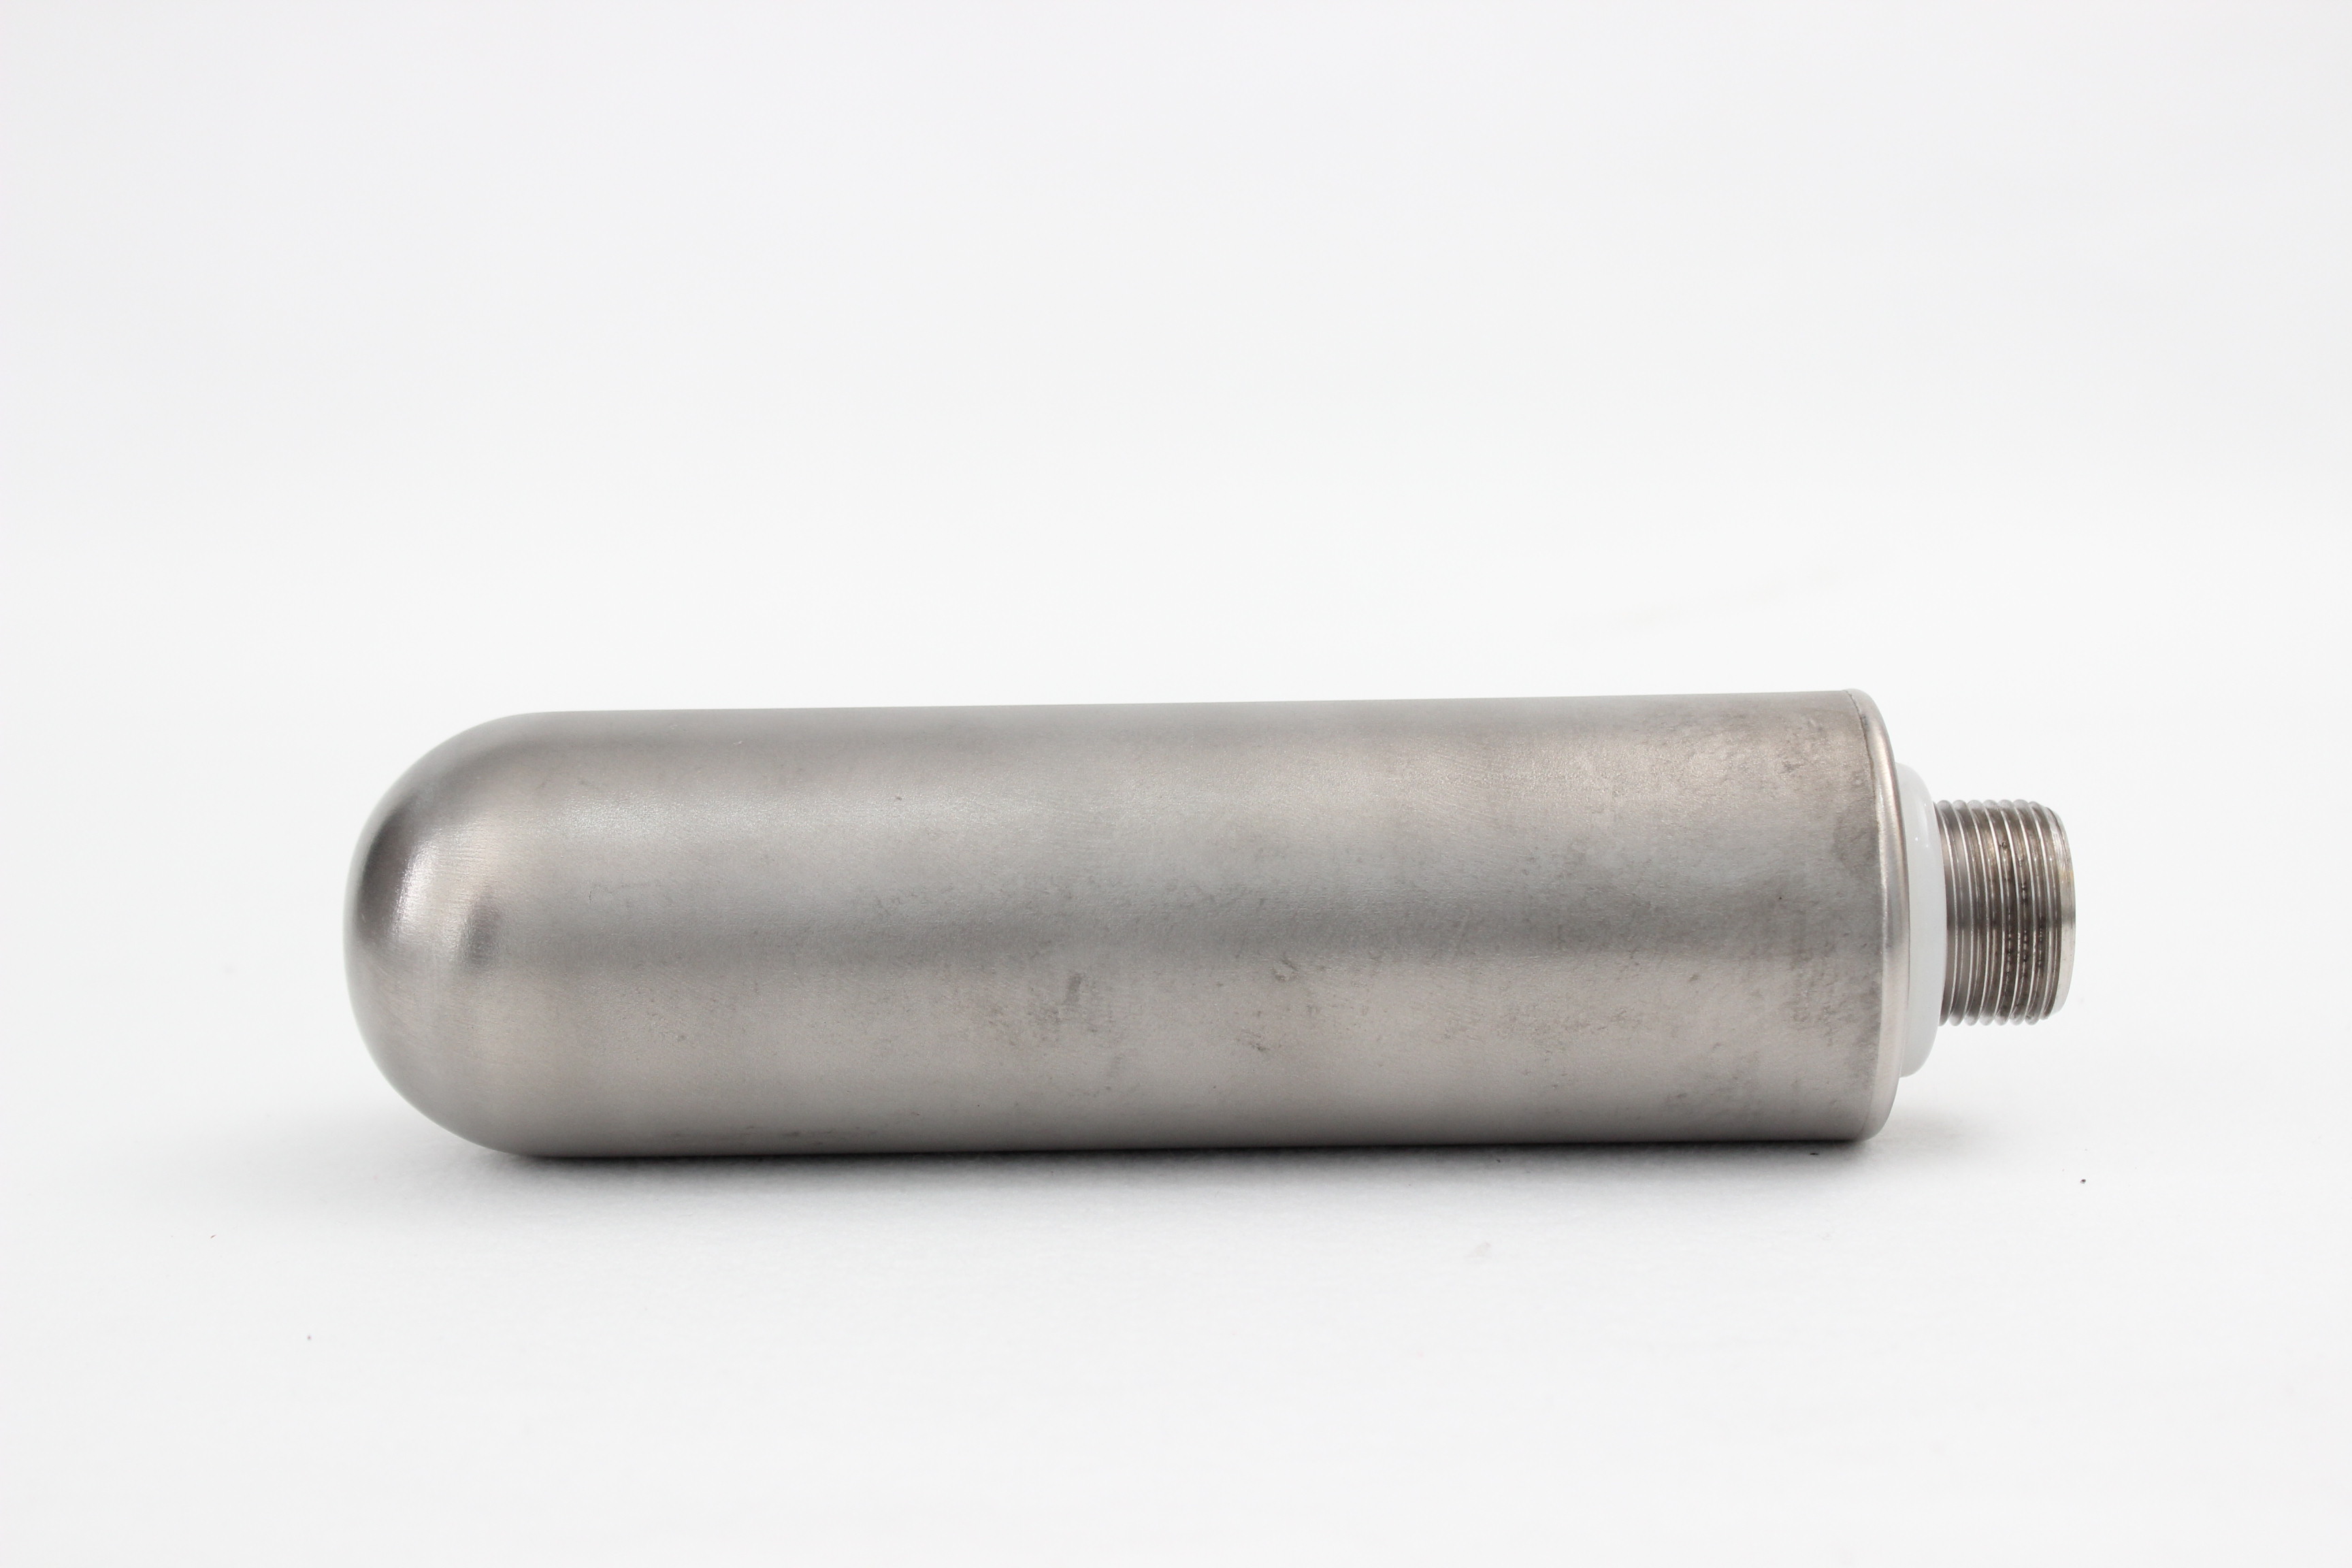 Titanium powder filter cartridge